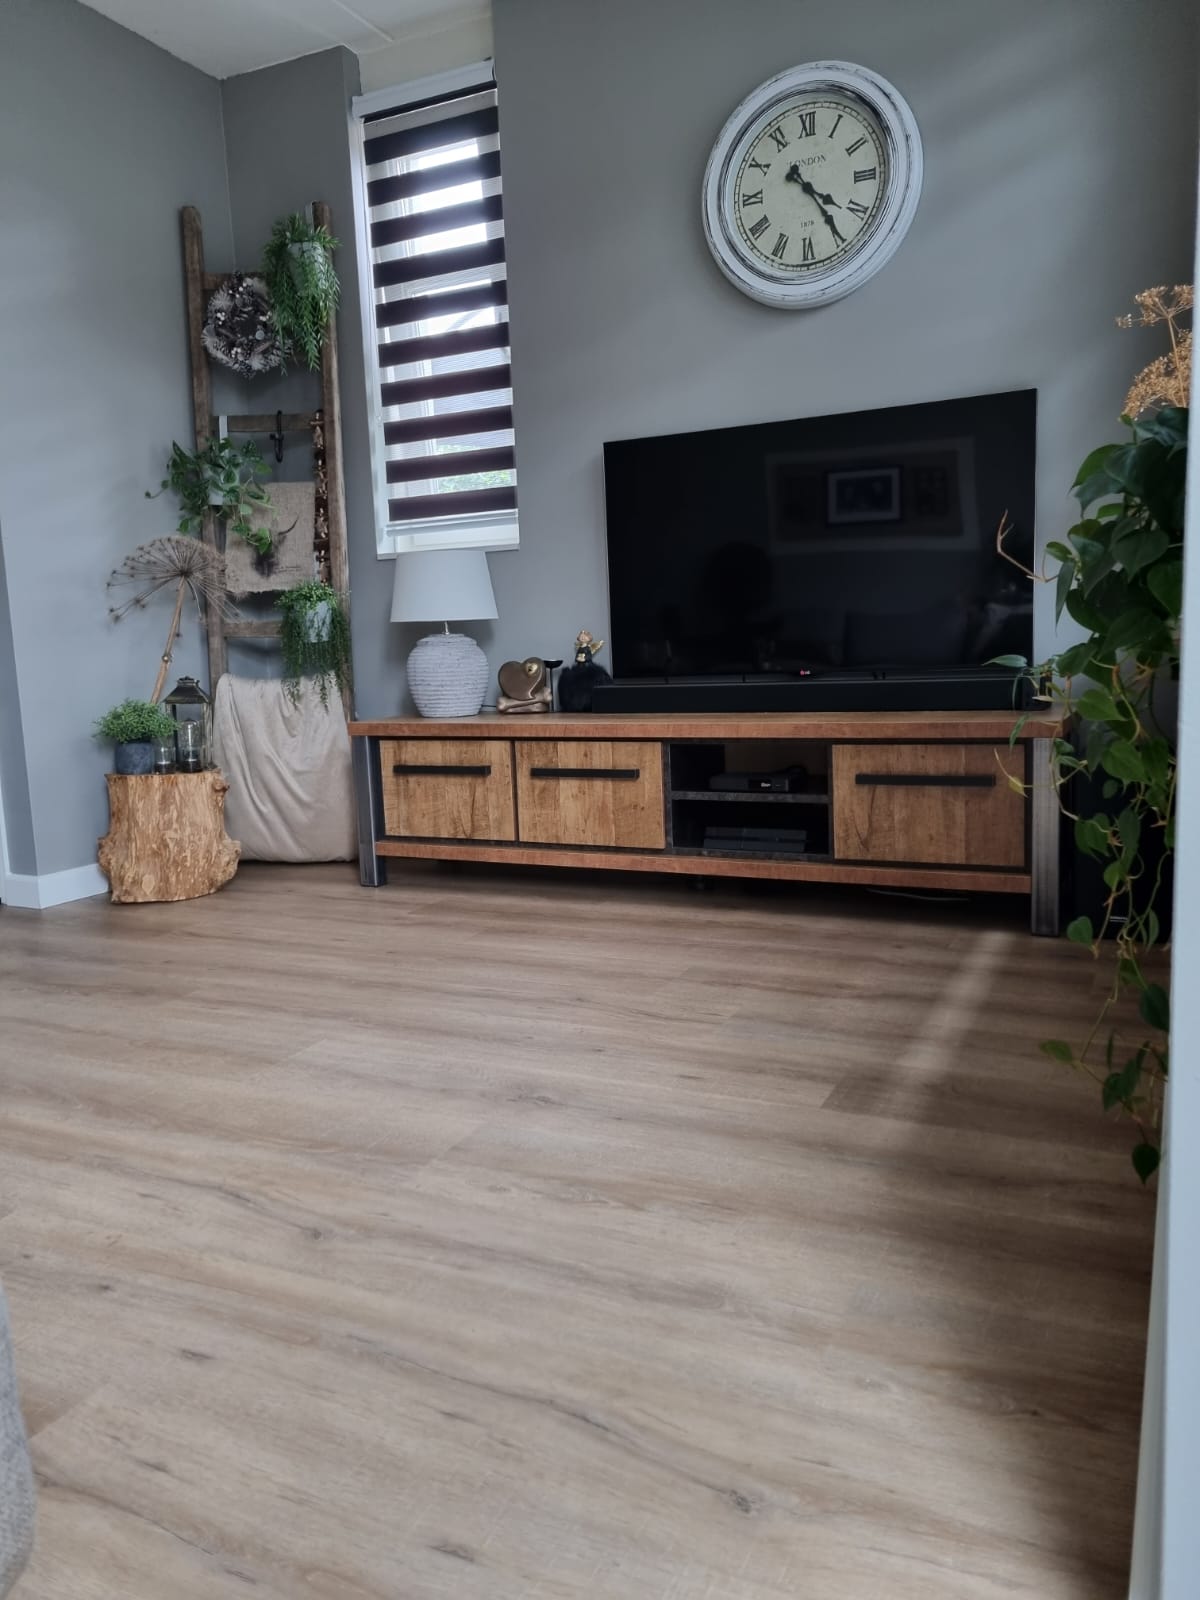 Bedroom With Wooden Floor